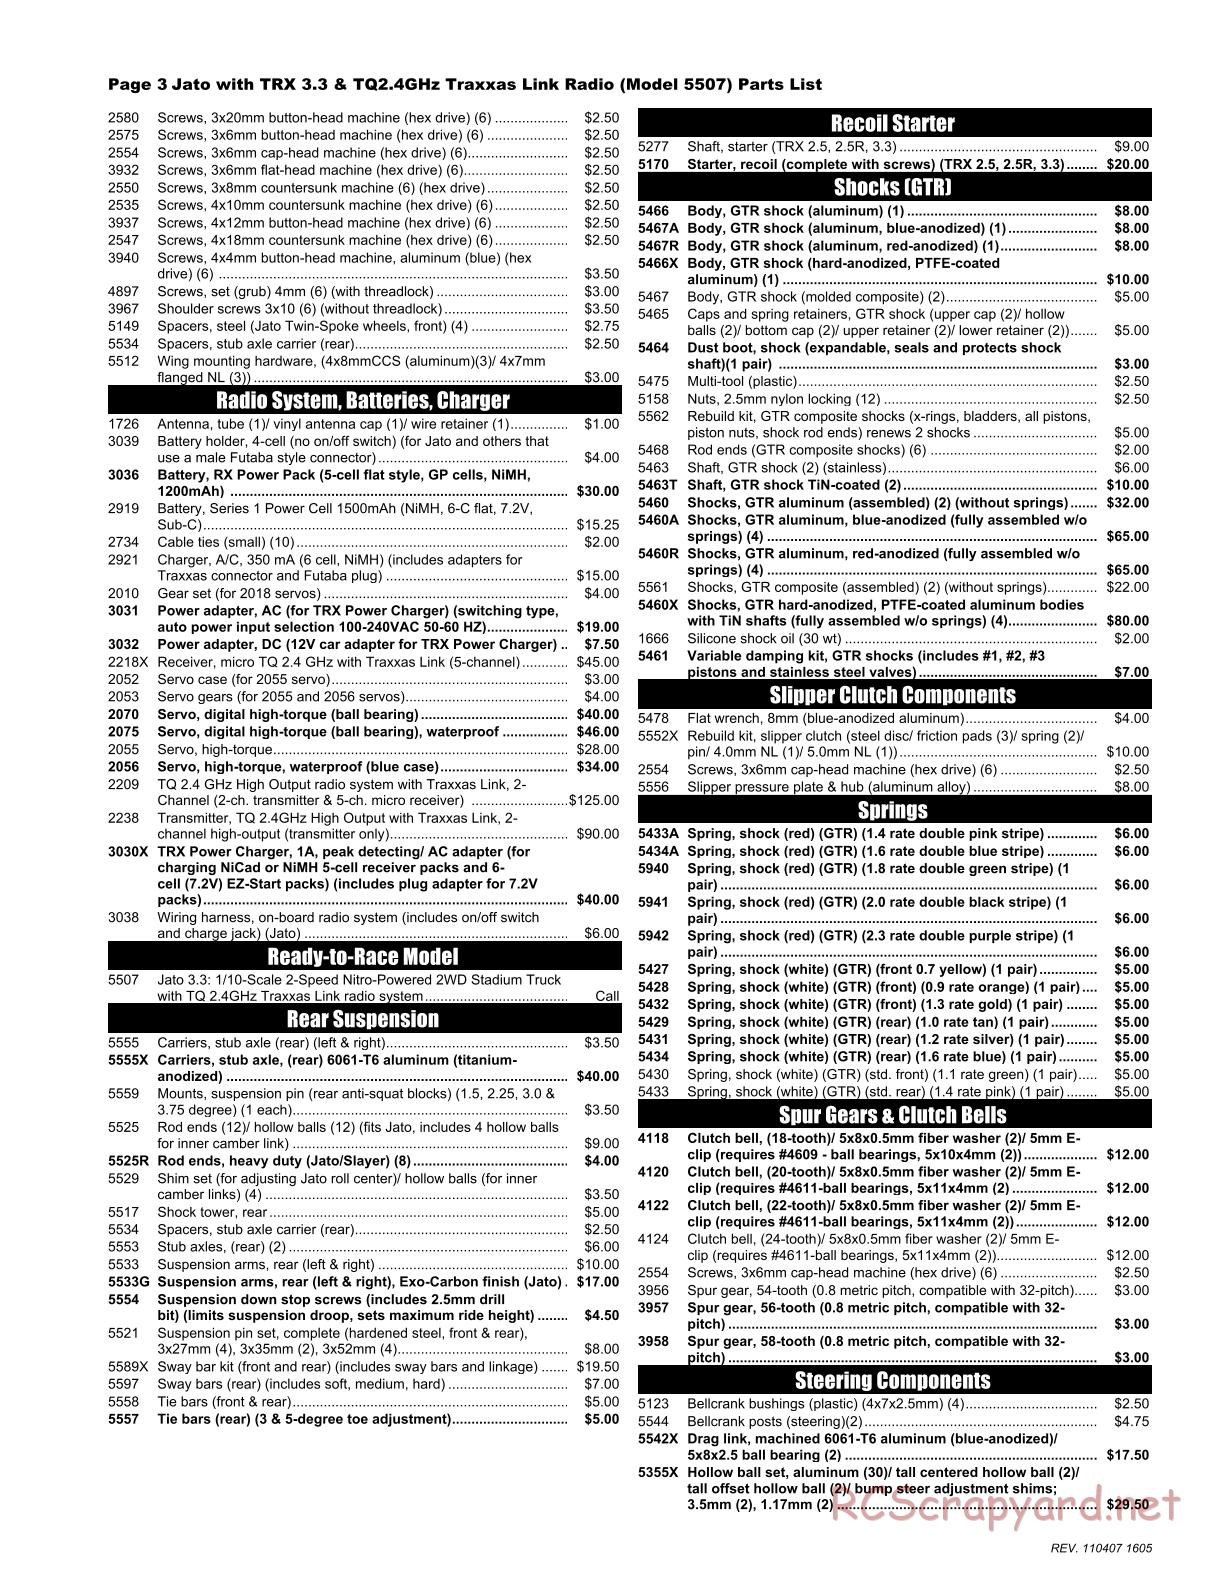 Traxxas - Jato 3.3 (2010) - Parts List - Page 3